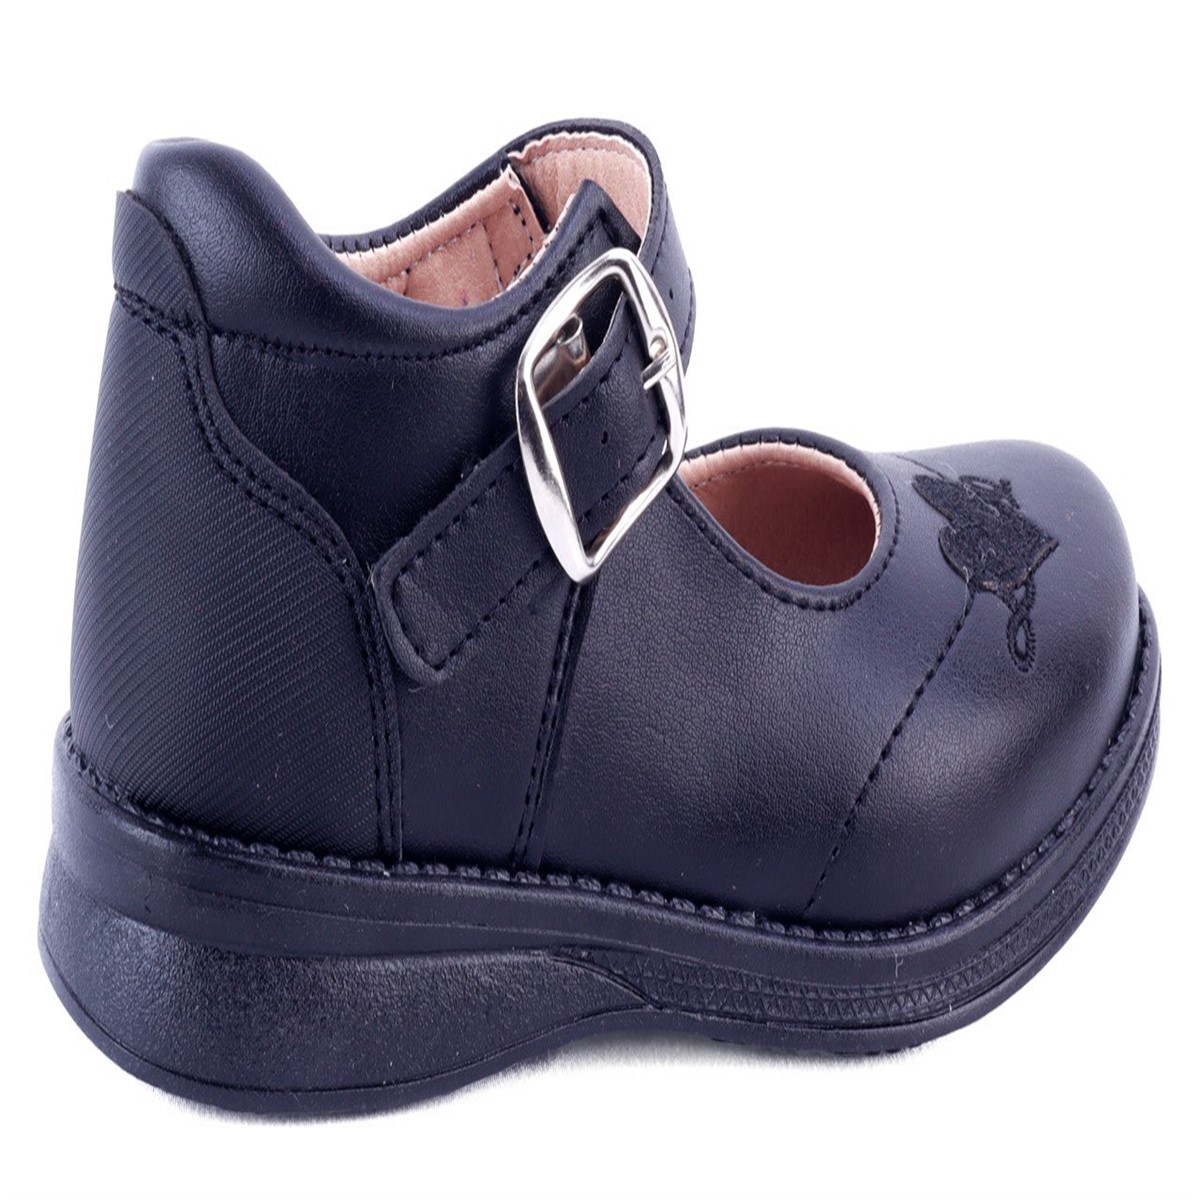 Zapato Escolar Negro Niña Arco Soporte Flats Casual 13-461-n